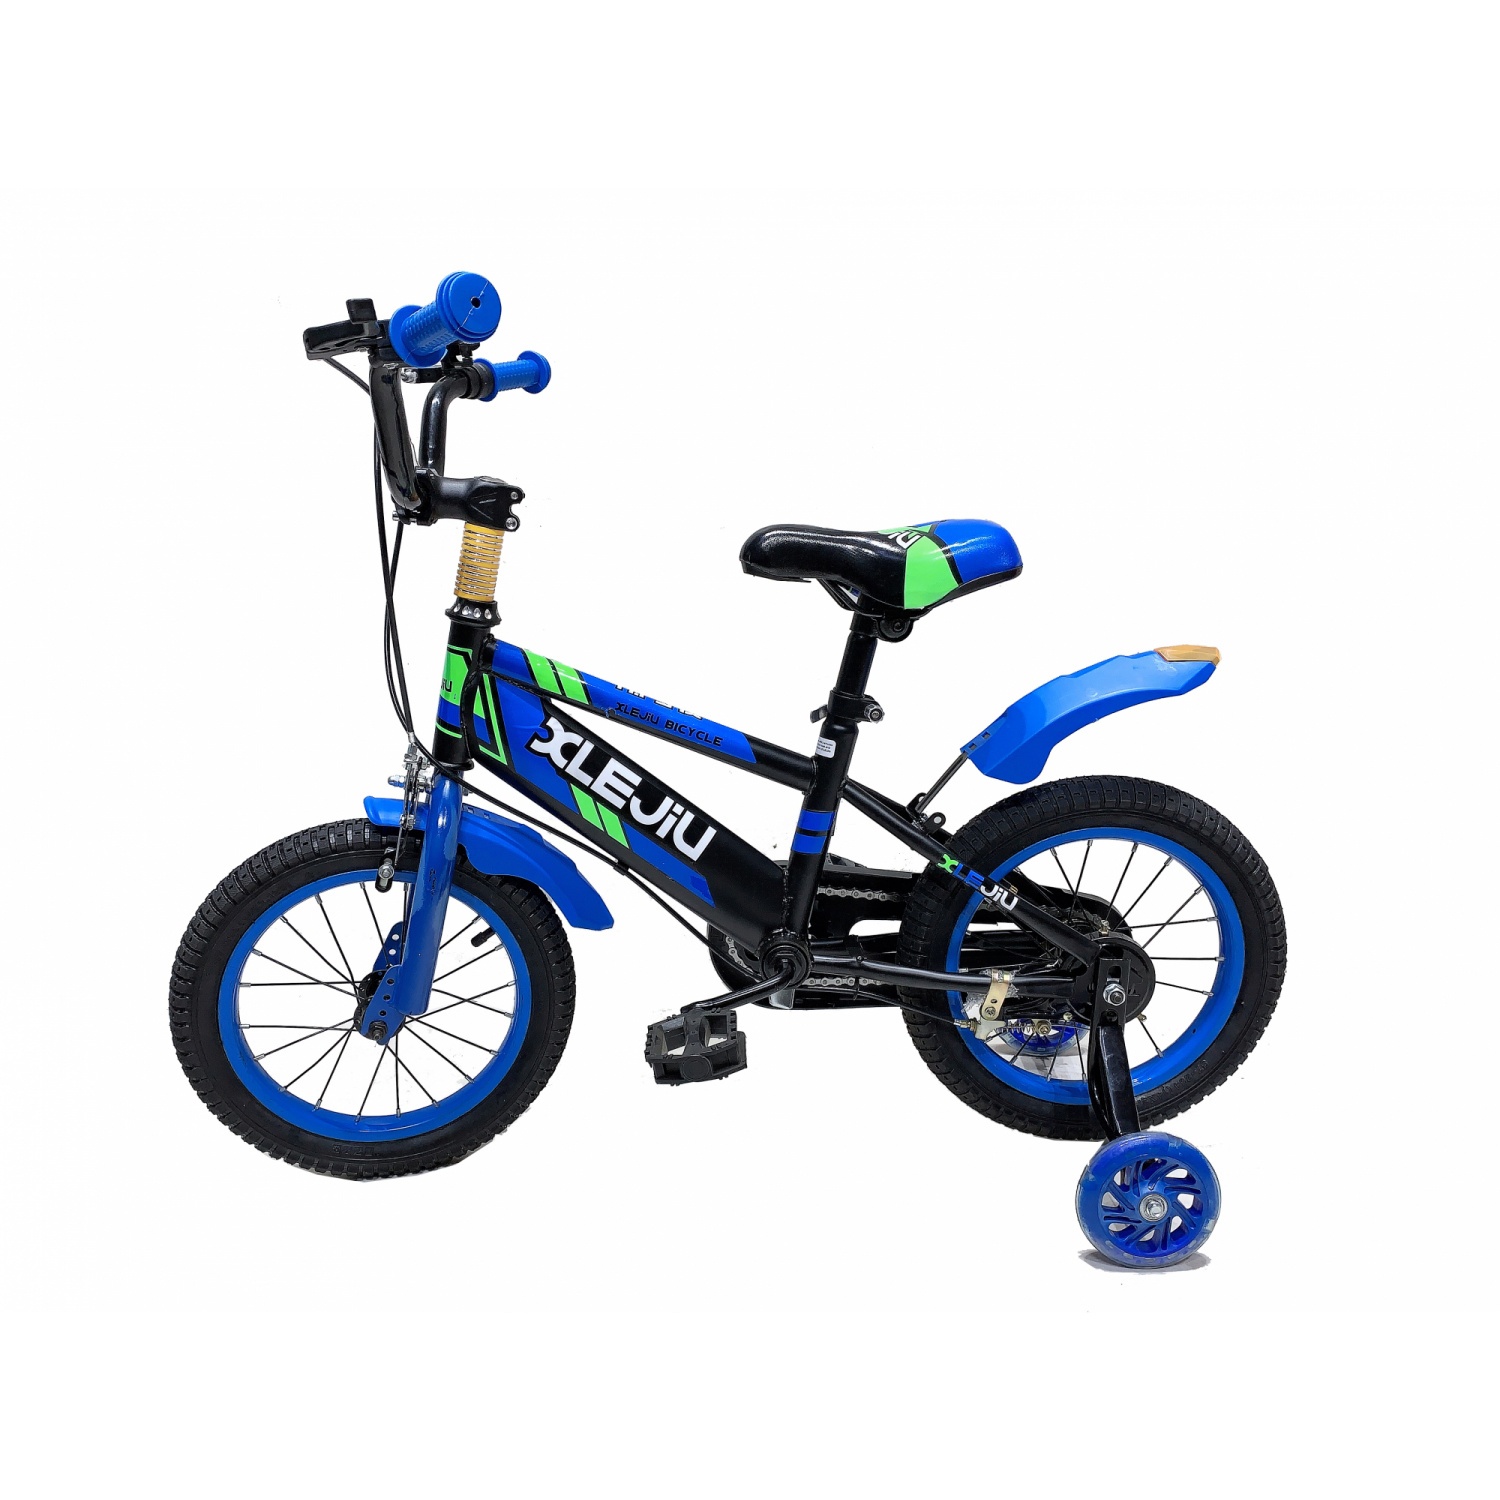 NINO WORLD จักรยานเด็ก 12 นิ้ว เหมาะกับเด็ก 2-4 ขวบ  15823-M16 สีฟ้า